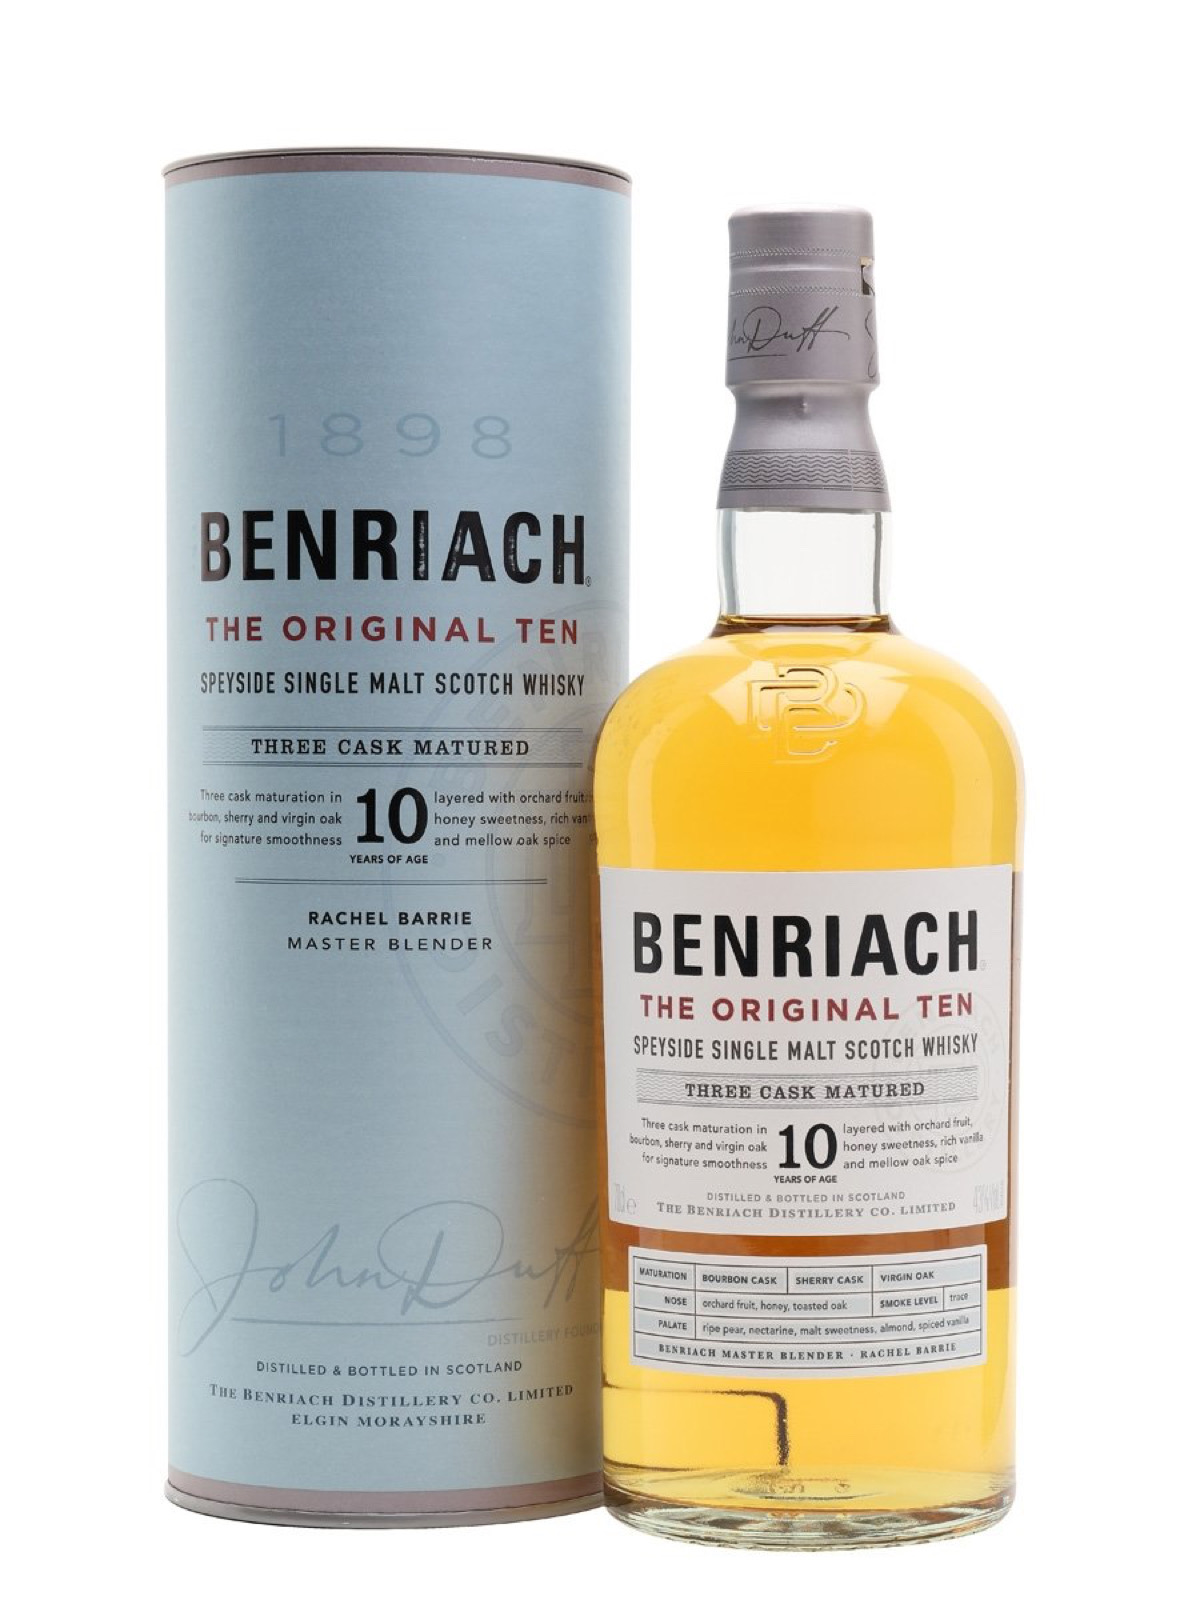 Benriach scotch